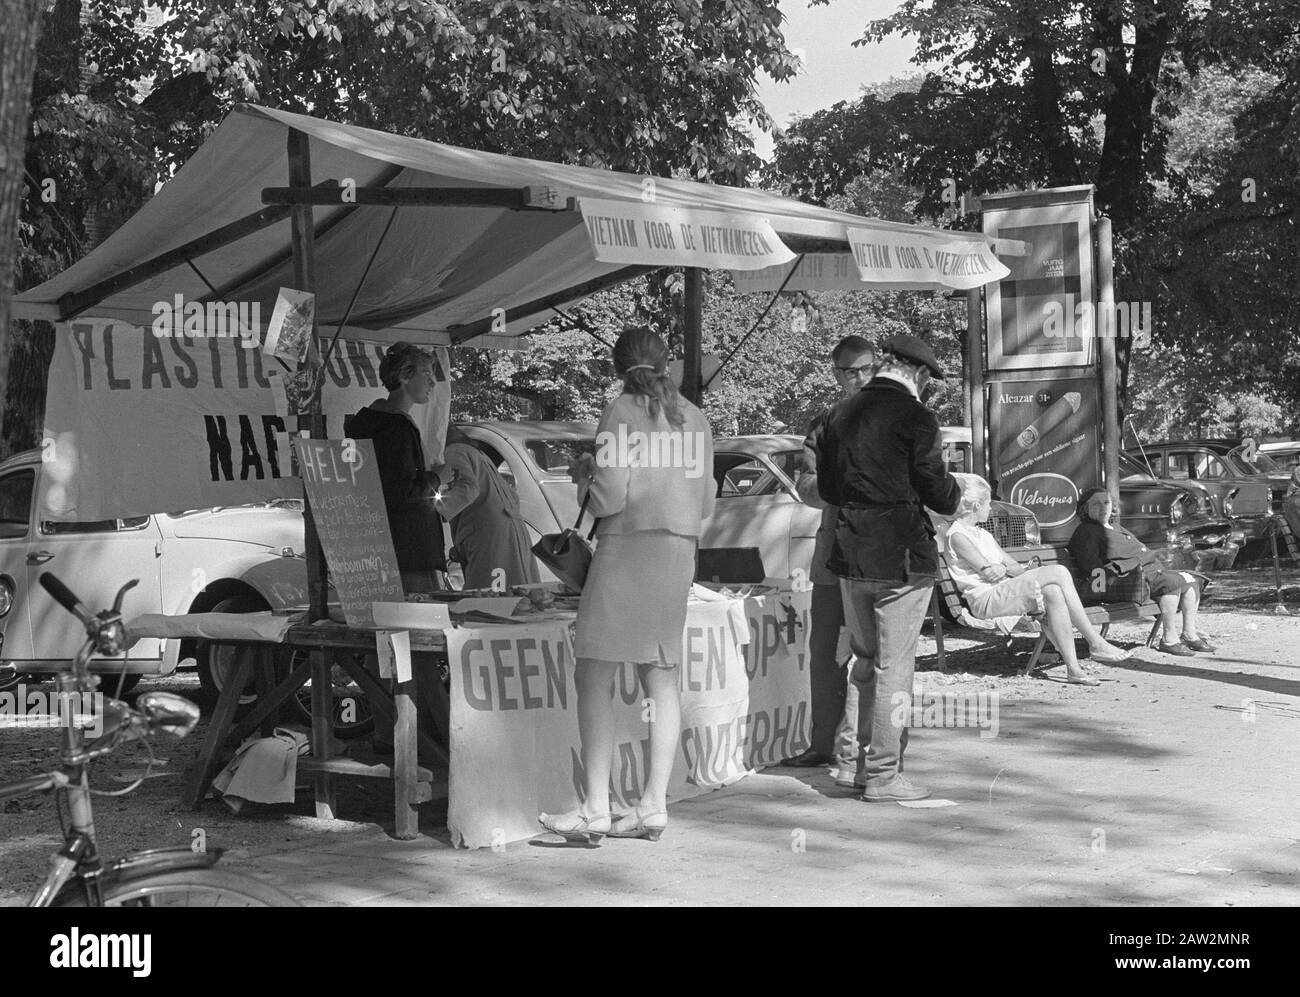 Kunststoff für Vietnam: Tippen Sie auf den westlichen Markt, wo Sie Tickets ab 1.65 kaufen können Datum: 25. August 1966 Stichwörter: Karten, PLASTISCHER Personenname: Westermarkt Stockfoto